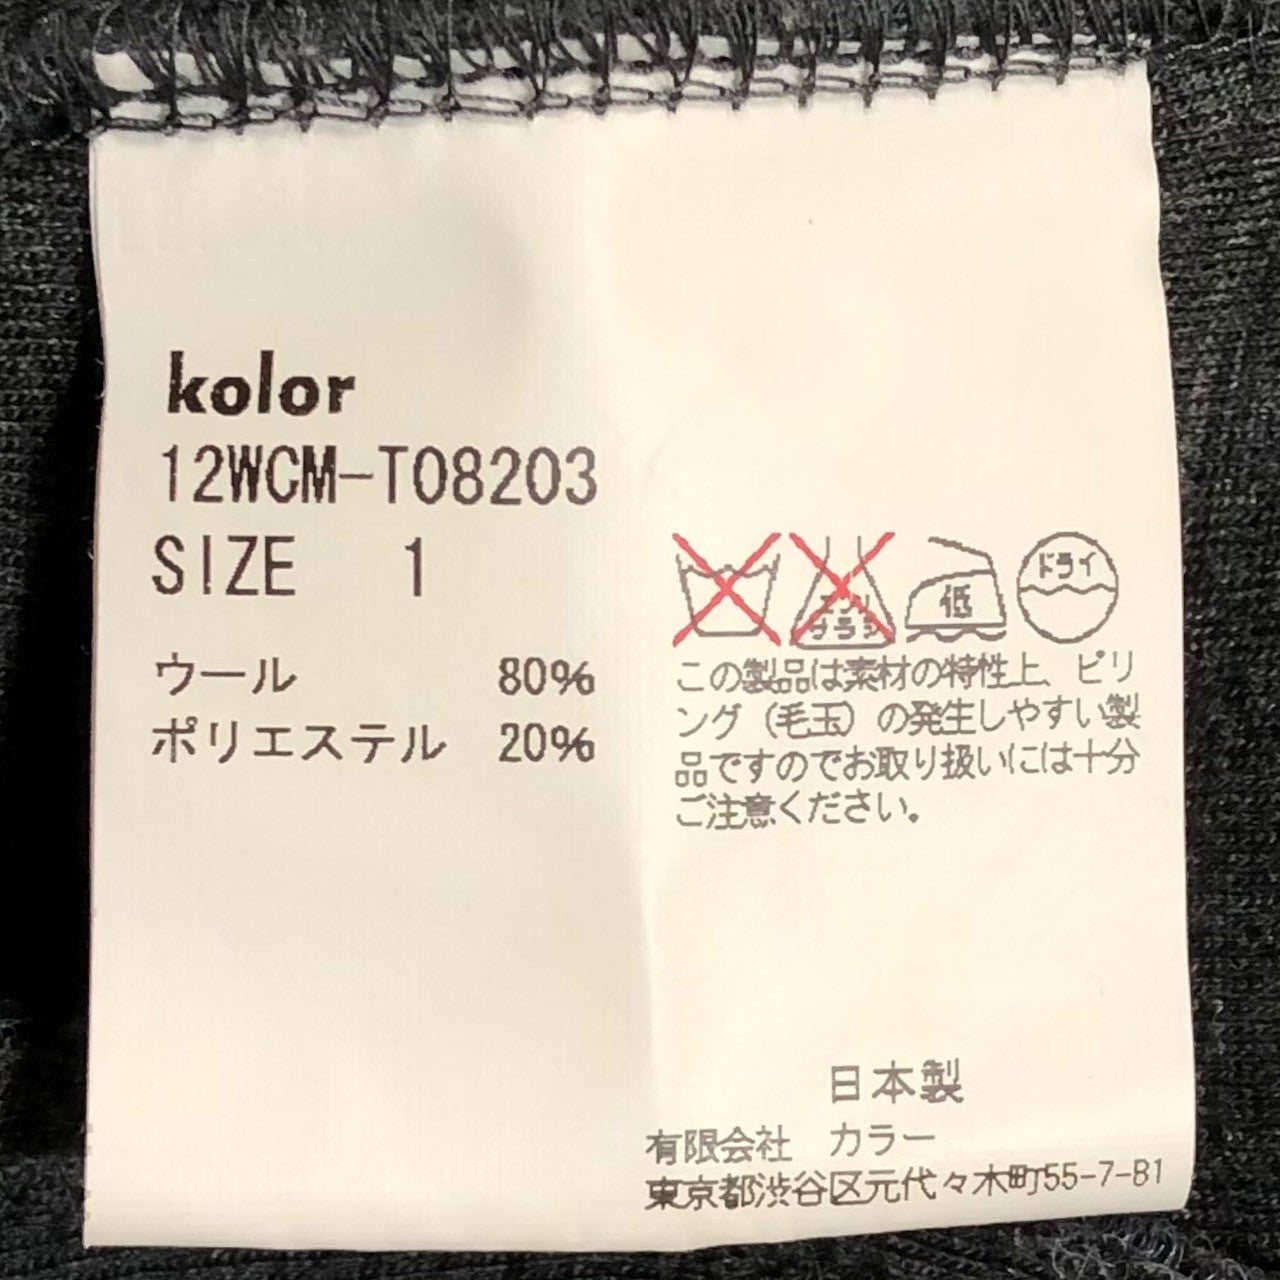 kolor(カラー) 12AW bonded zip hoodie ボンディング ジップ パーカー 12WCM-T08203 SIZE 1(S) グレー